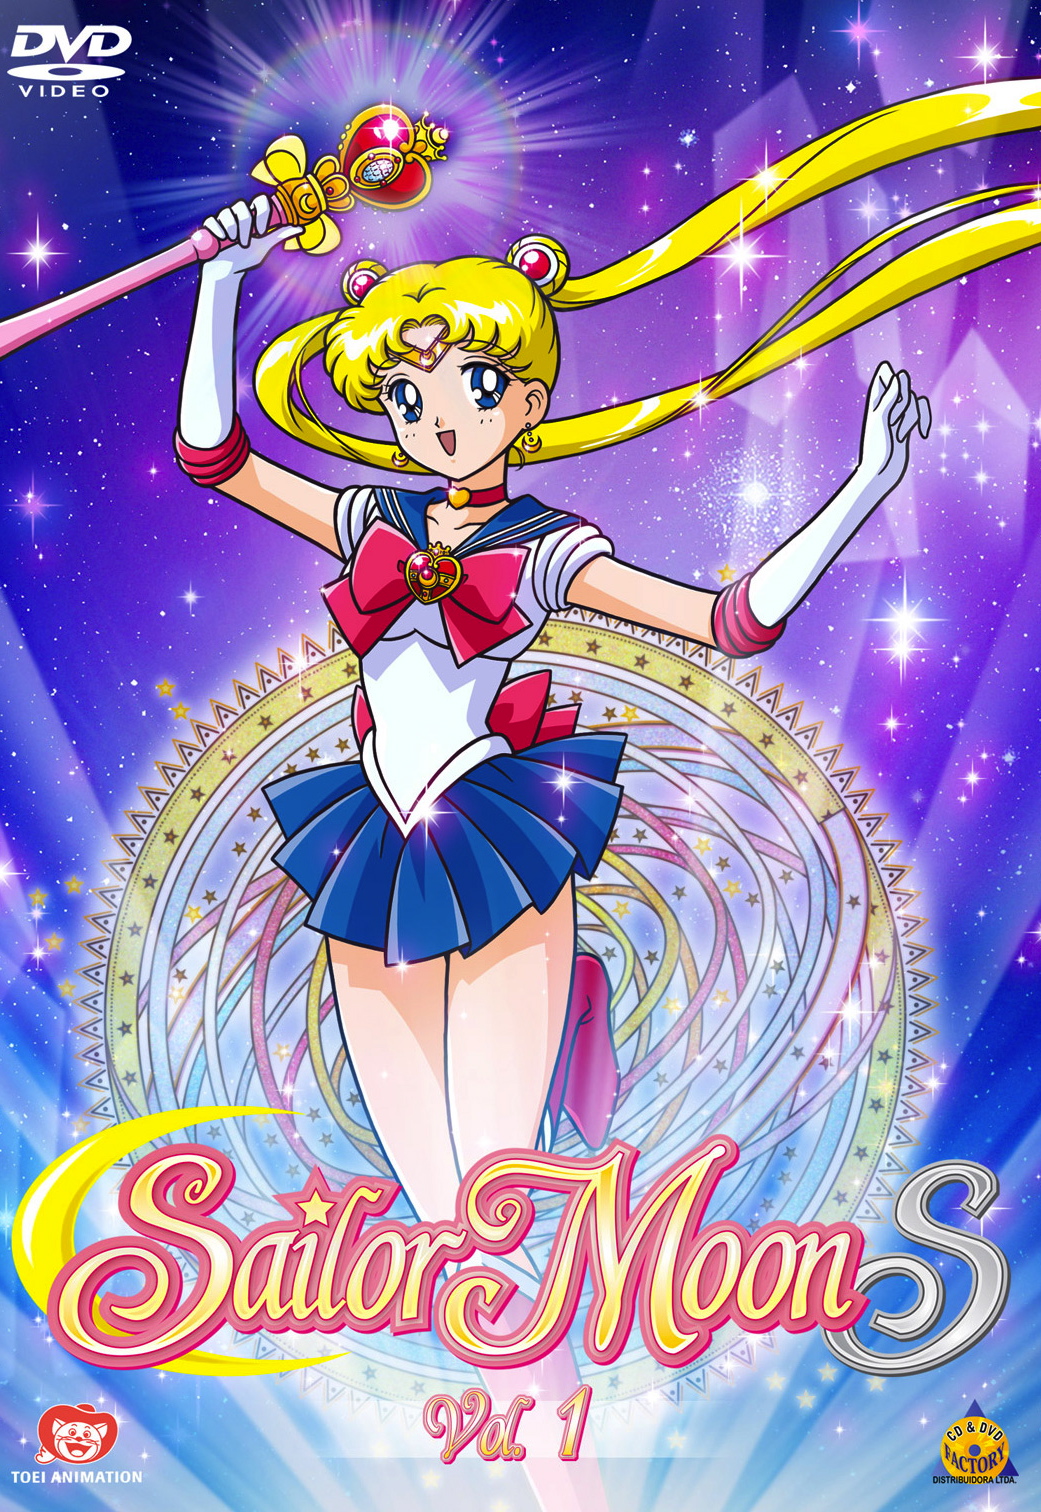 Initial D Brasil 頭文字D - (Brazil only) E na dublagem BR teremos nossa  Sayuki, Denise Reis, retornando ao papel icônico de Sailor Mars (ou Sailor  Marte) nos novos filmes de Sailor Moon